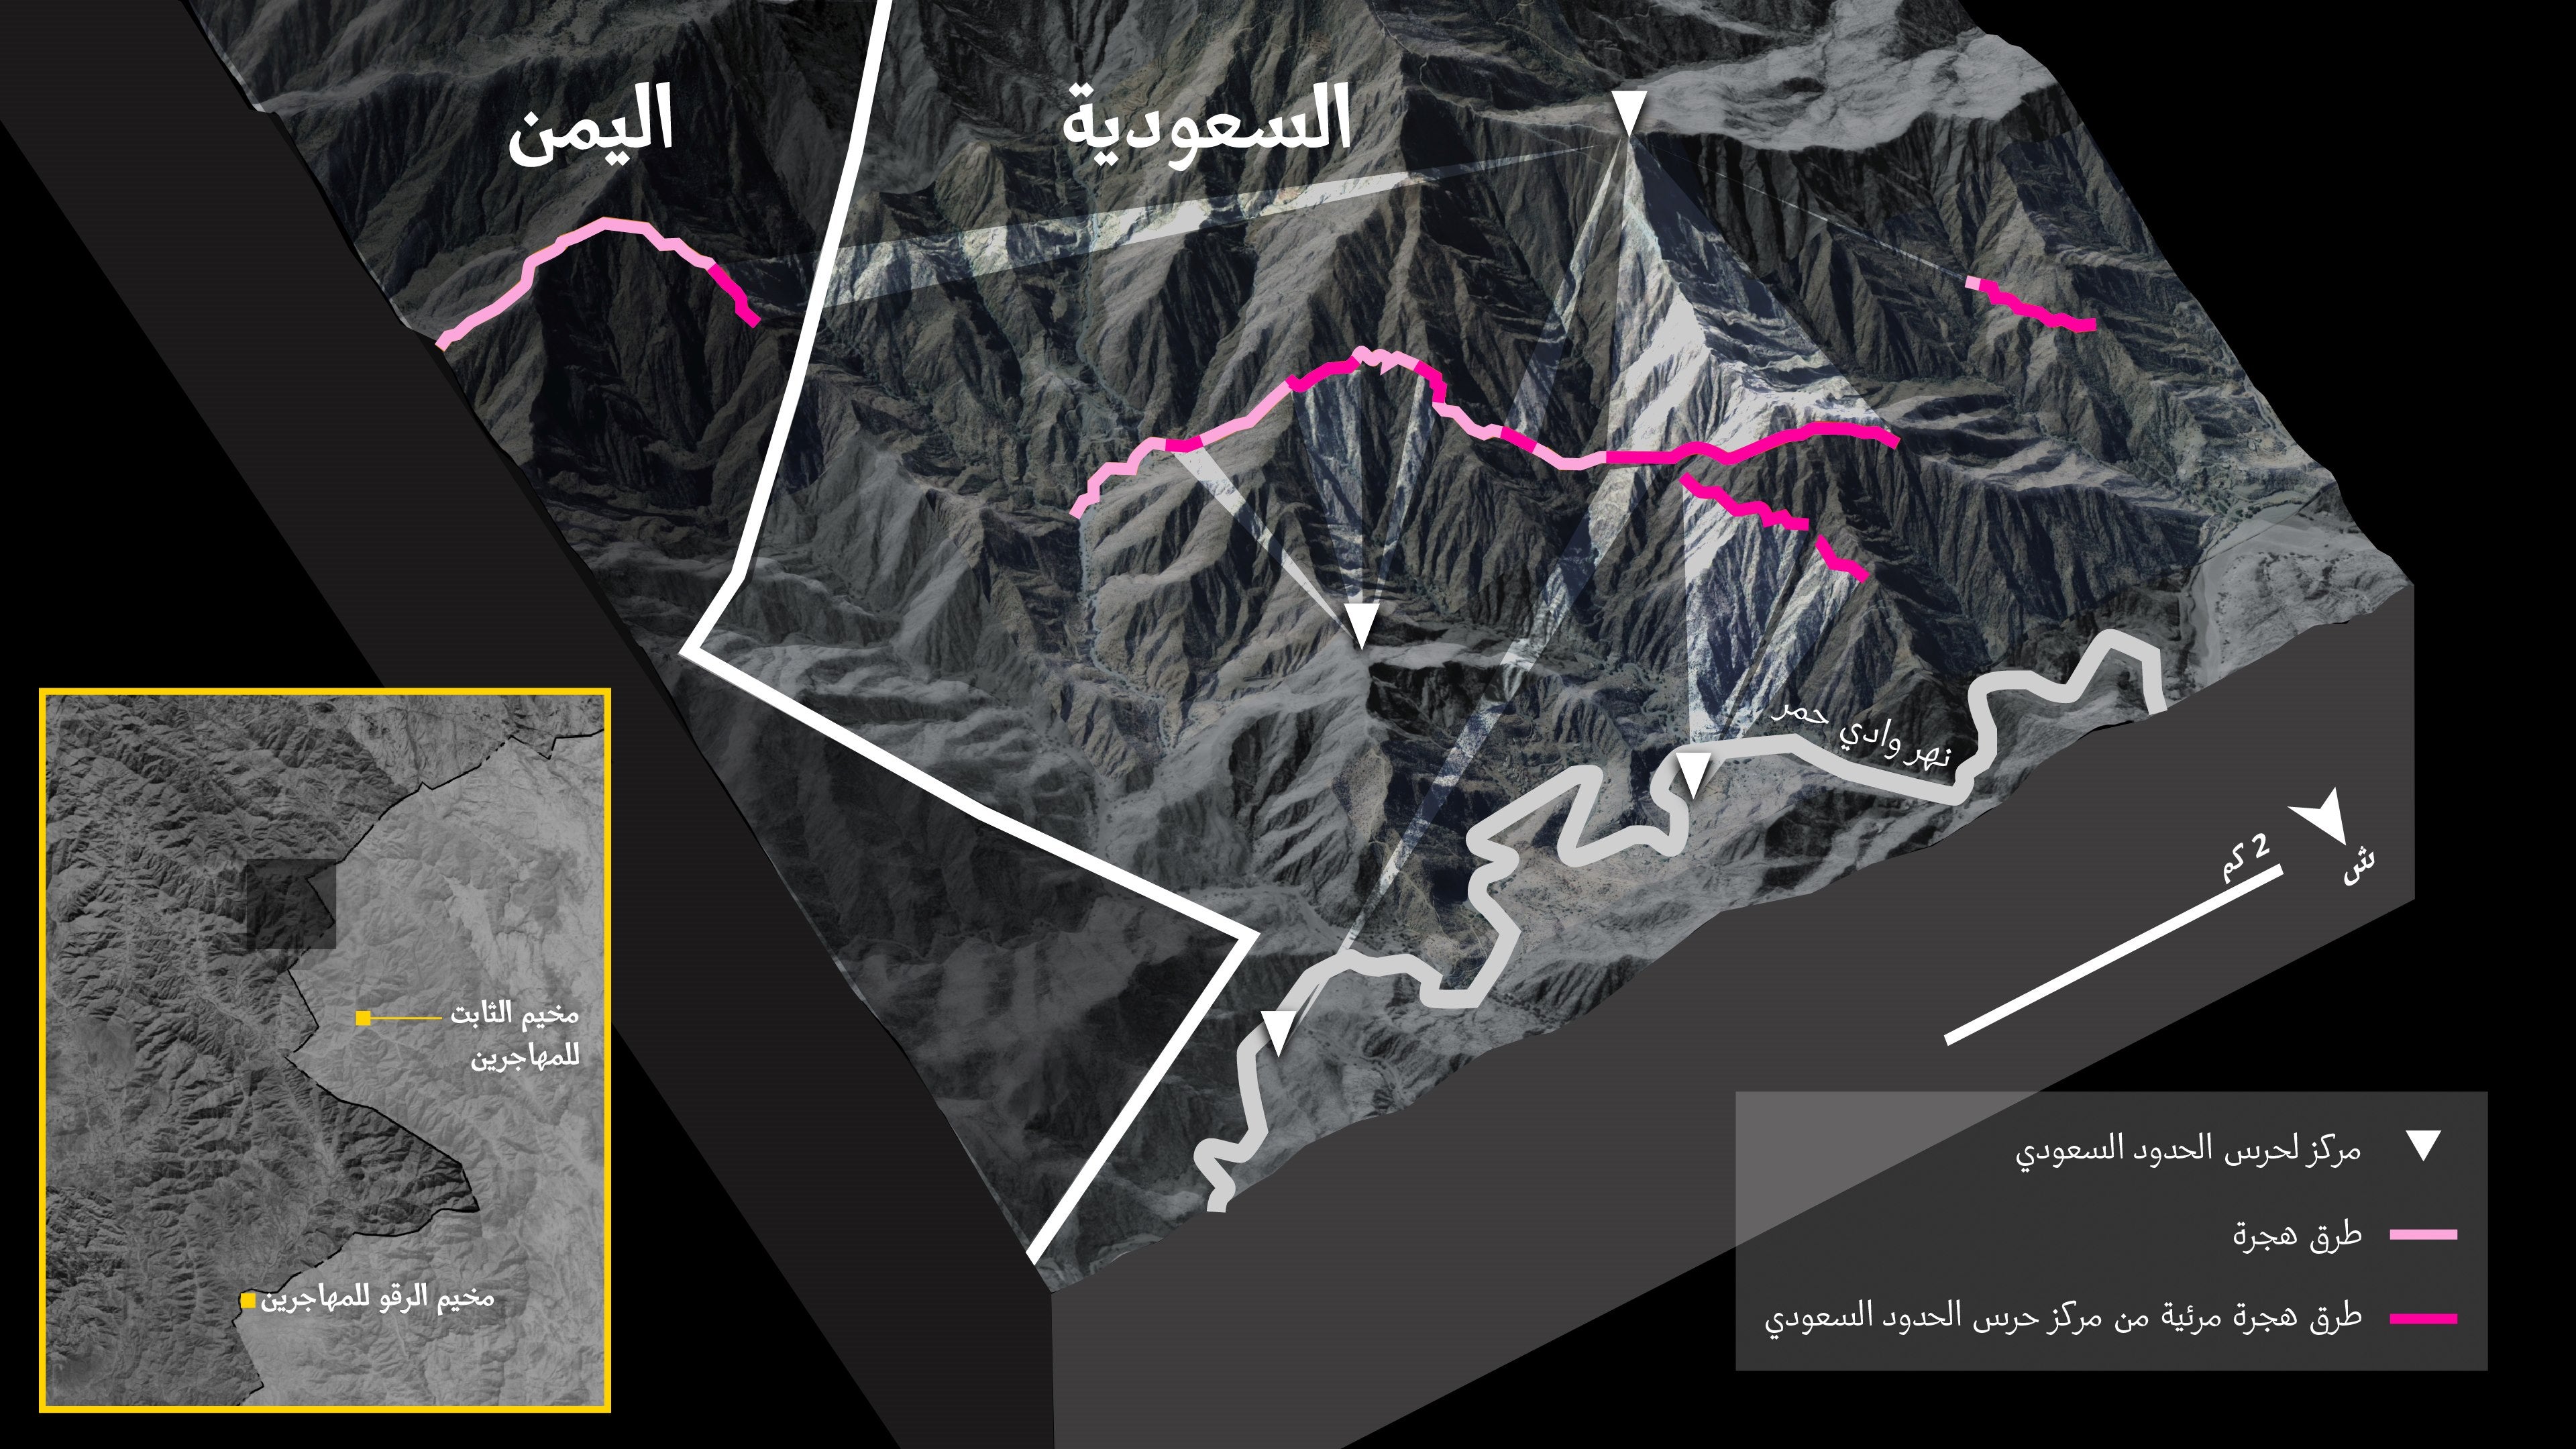 استخدام نموذج ثلاثي الأبعاد، حددت هيومن رايتس ووتش أجزاءً من المسار الذي يستخدمه المهاجرون للعبور من الثابت إلى السعودية، وهي يمكن رؤيتها من مراكز محتملة لحرس الحدود السعودي.